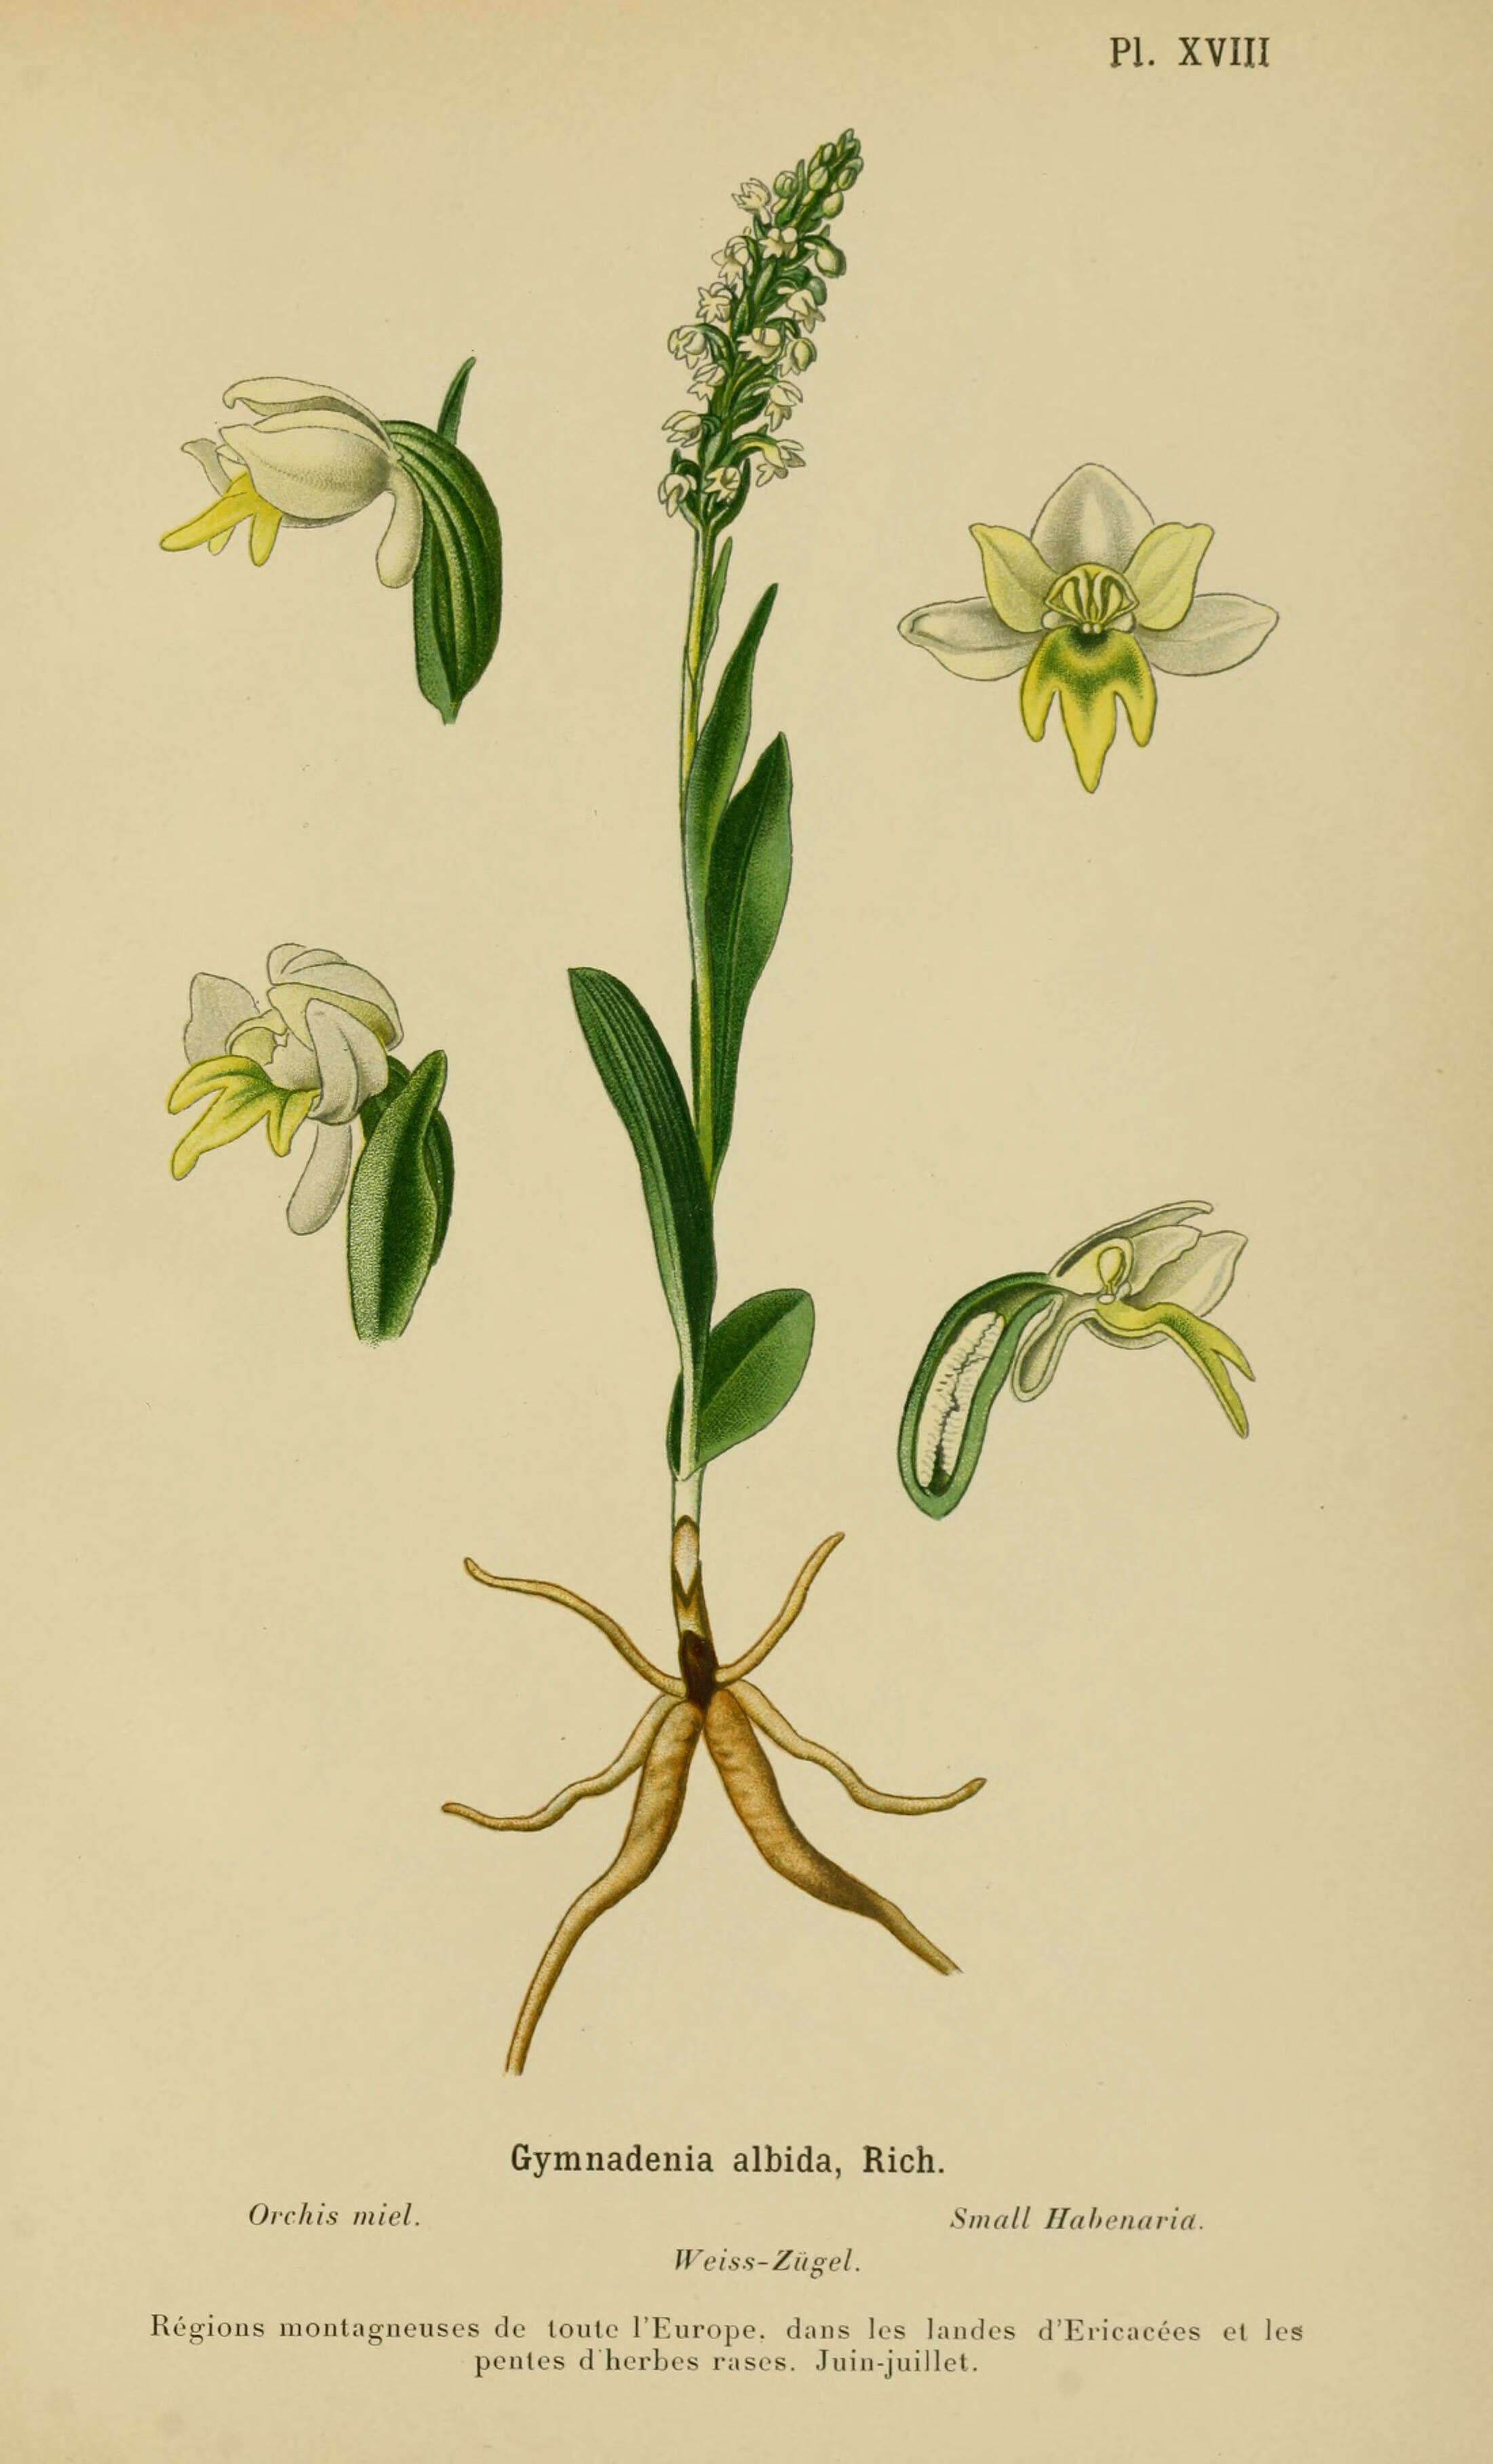 Image of Bog orchid